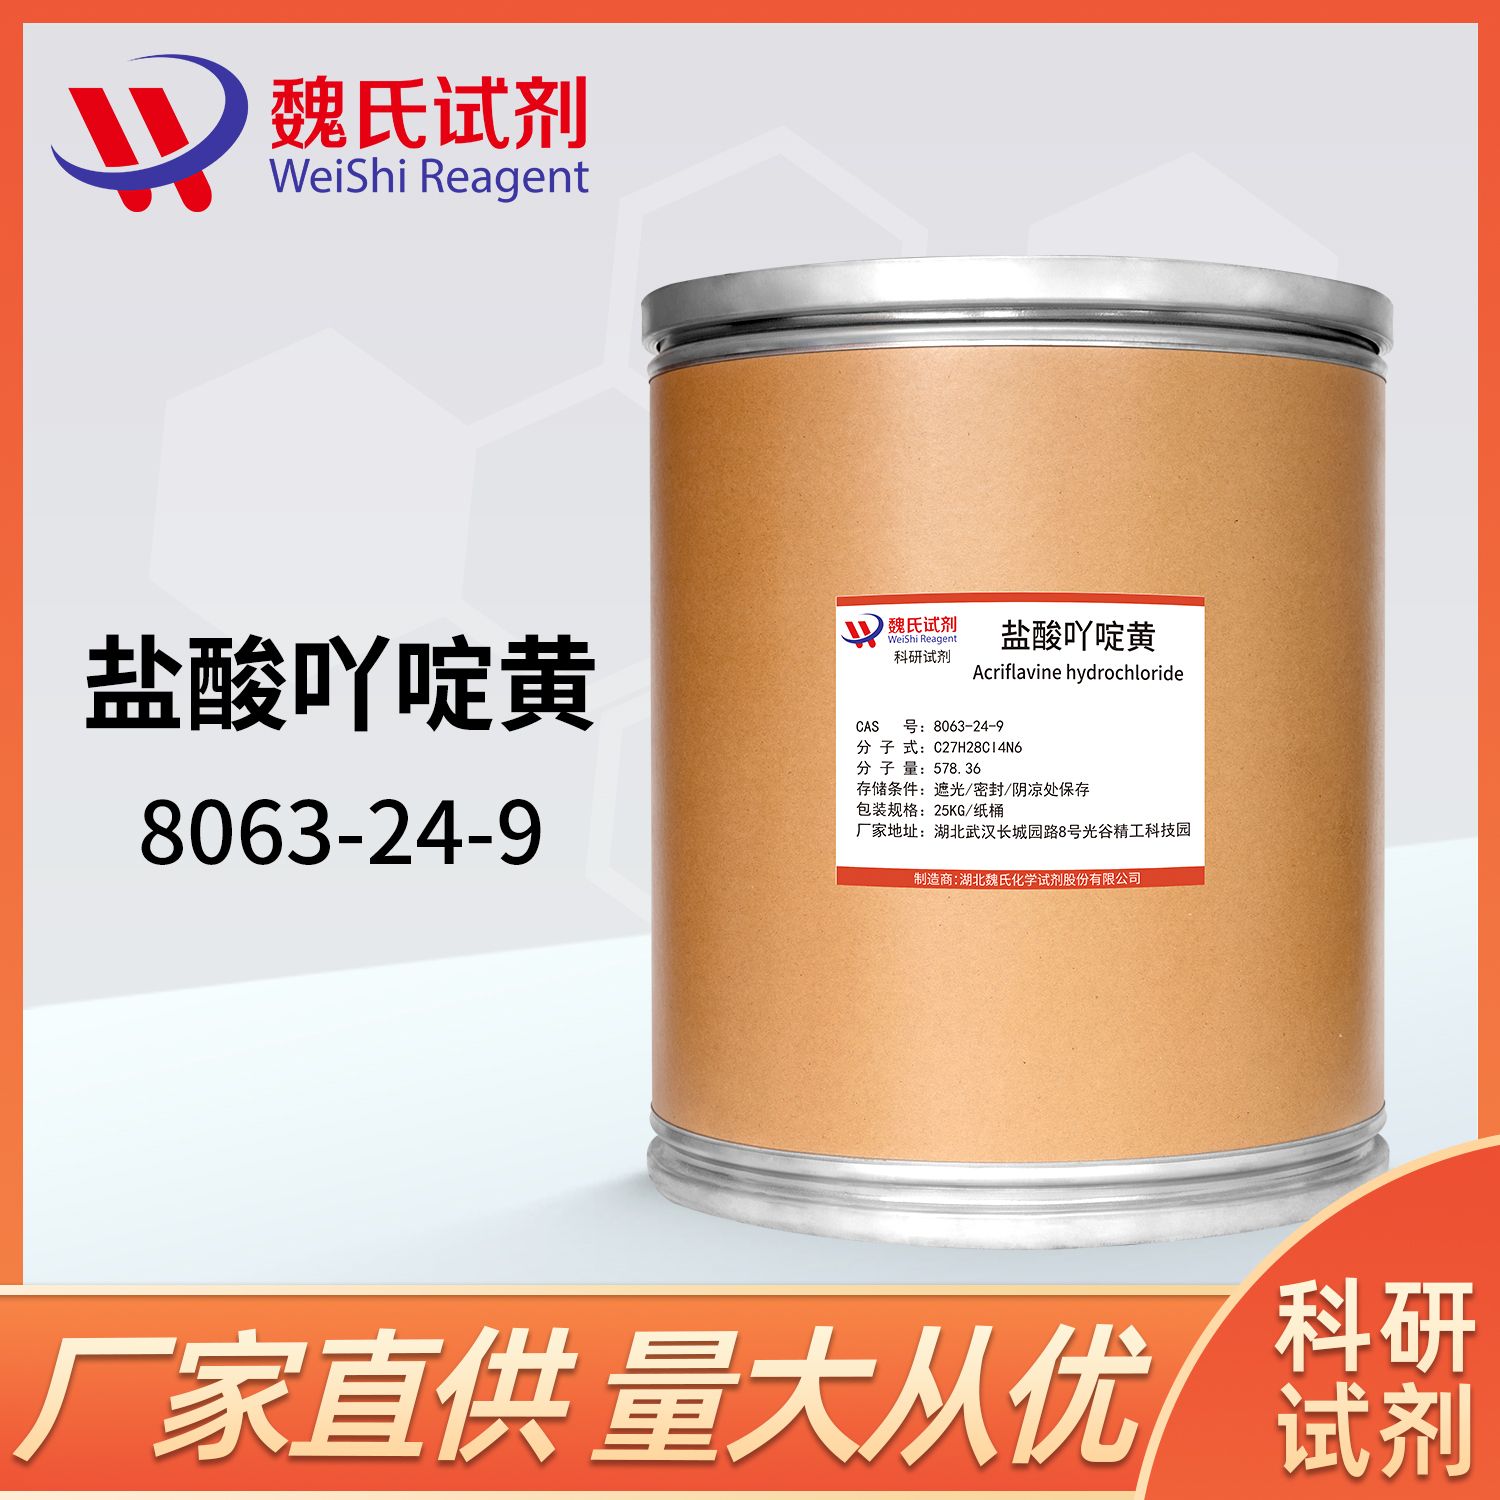 盐酸吖啶黄—8063-24-9—Acriflavine hydrochloride 